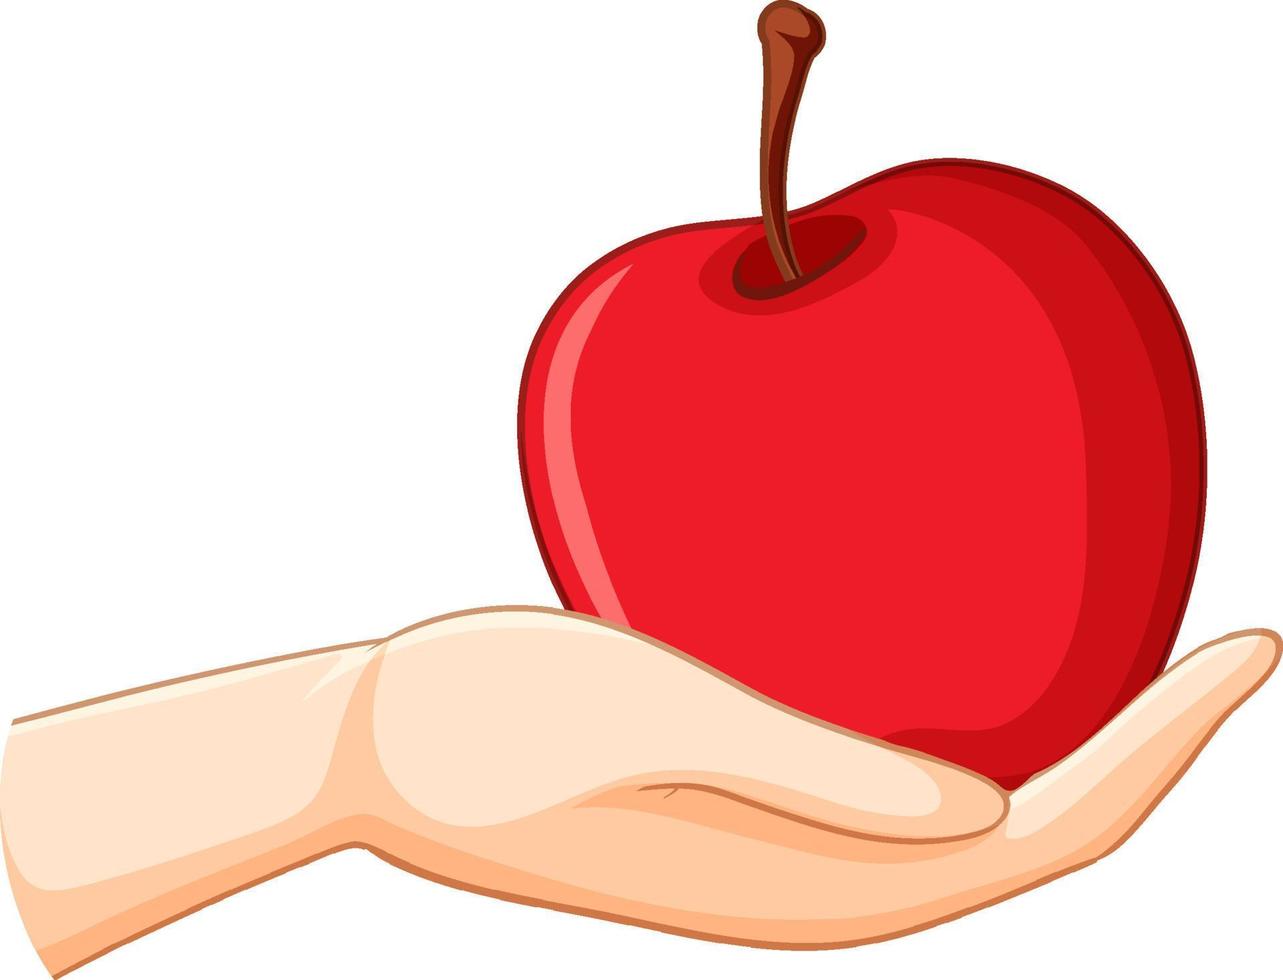 roter Apfel in der Hand isoliert vektor